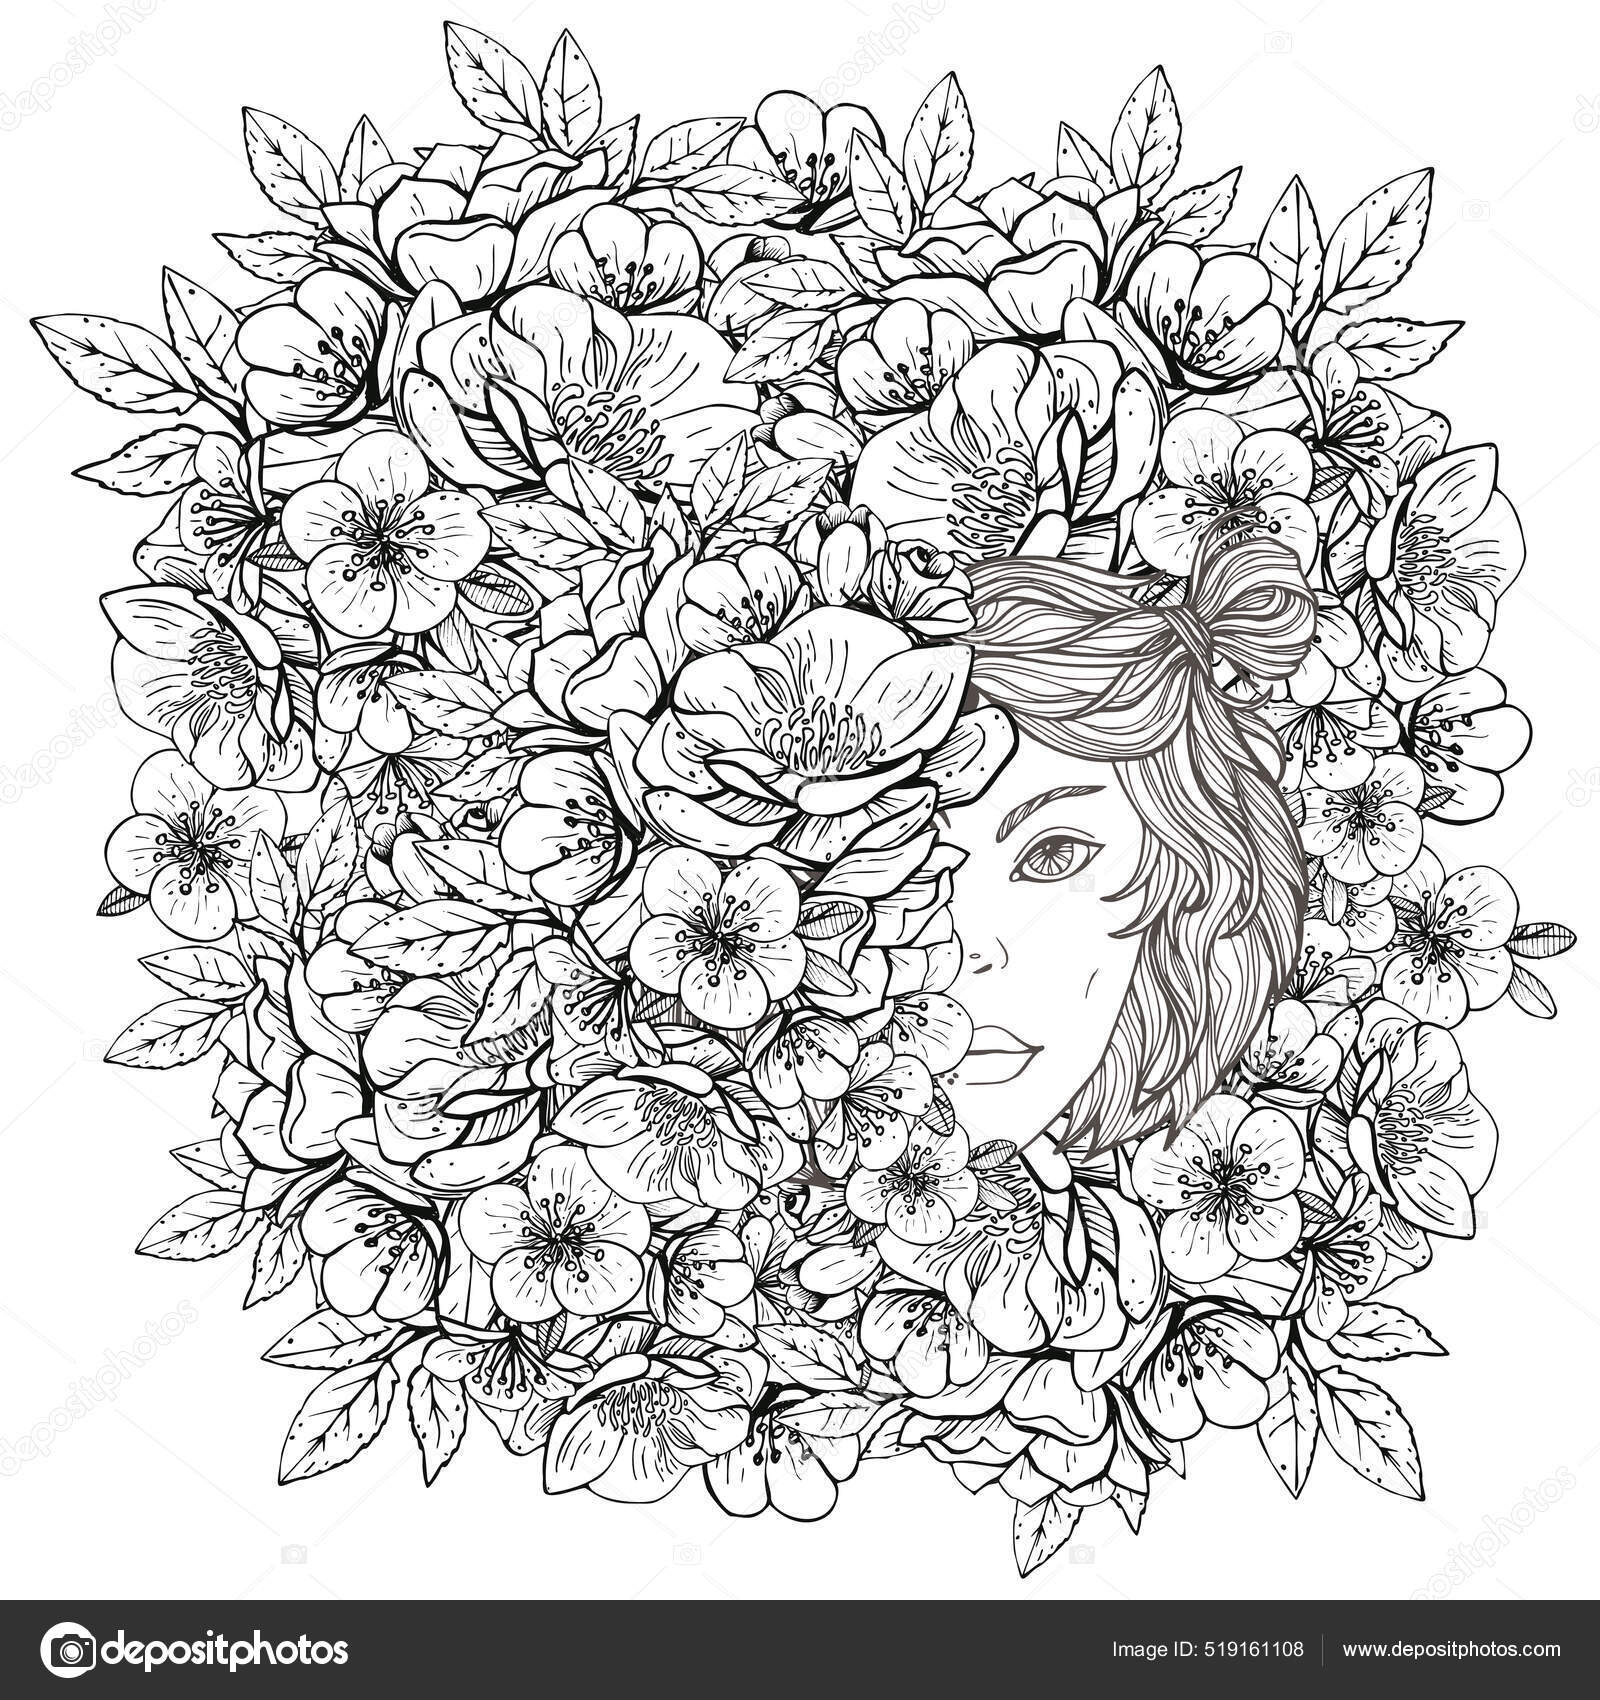 Coloriage pour adultes, coloriage page femme avec des fleurs, coloriage  adulte, art thérapie, coloriage femme -  France